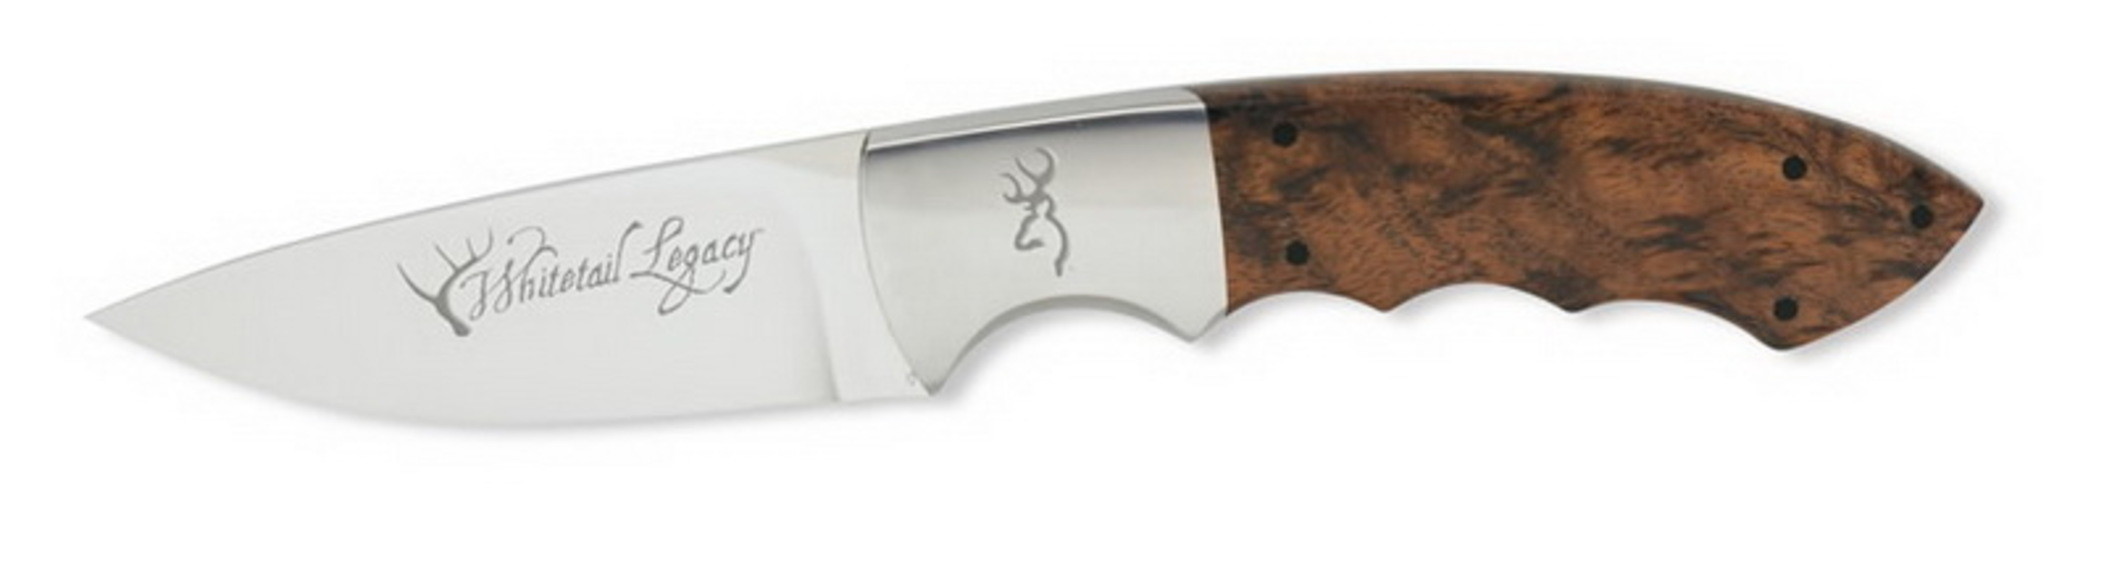 Нож Browning 248 Whitetail Legacy